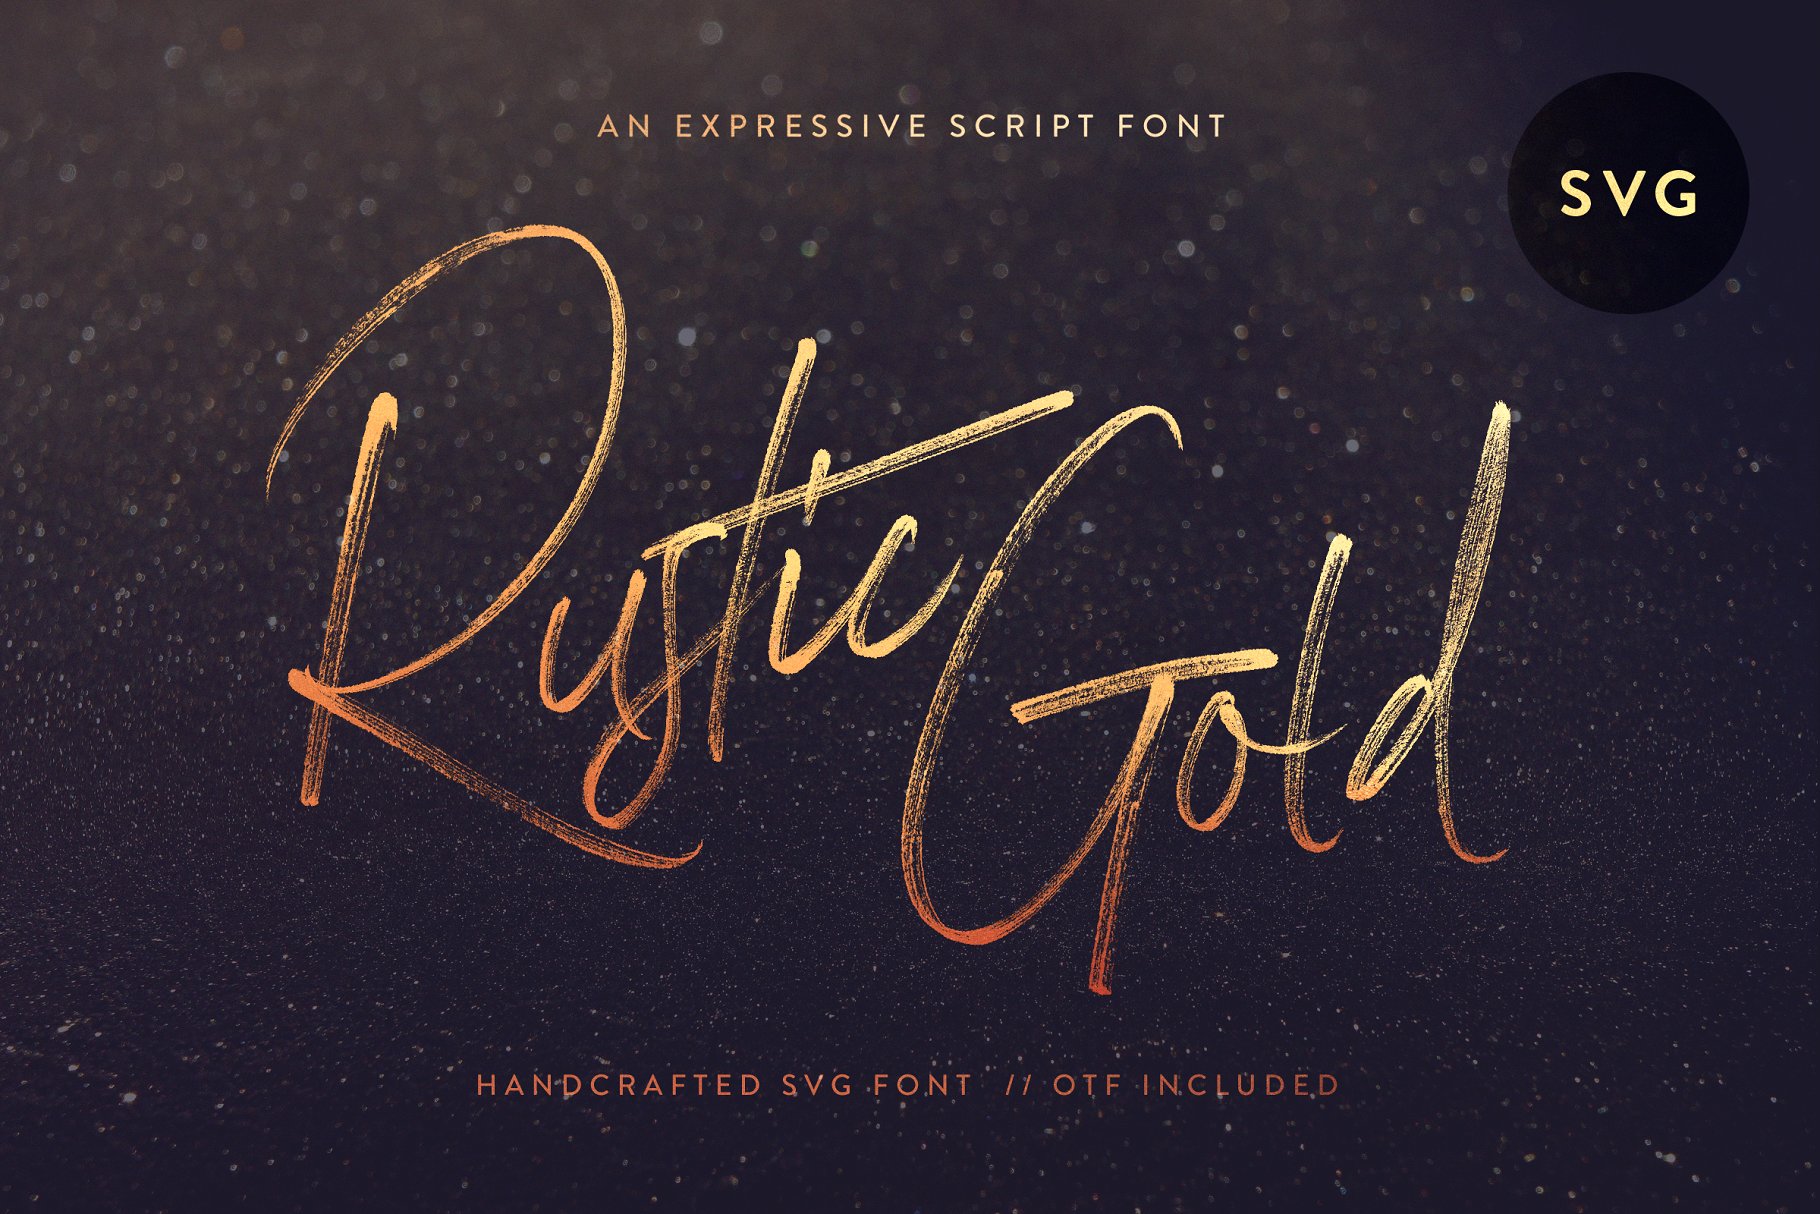 龙飞凤舞飘逸手写英文字体 Rustic Gold SVG Brush Script插图